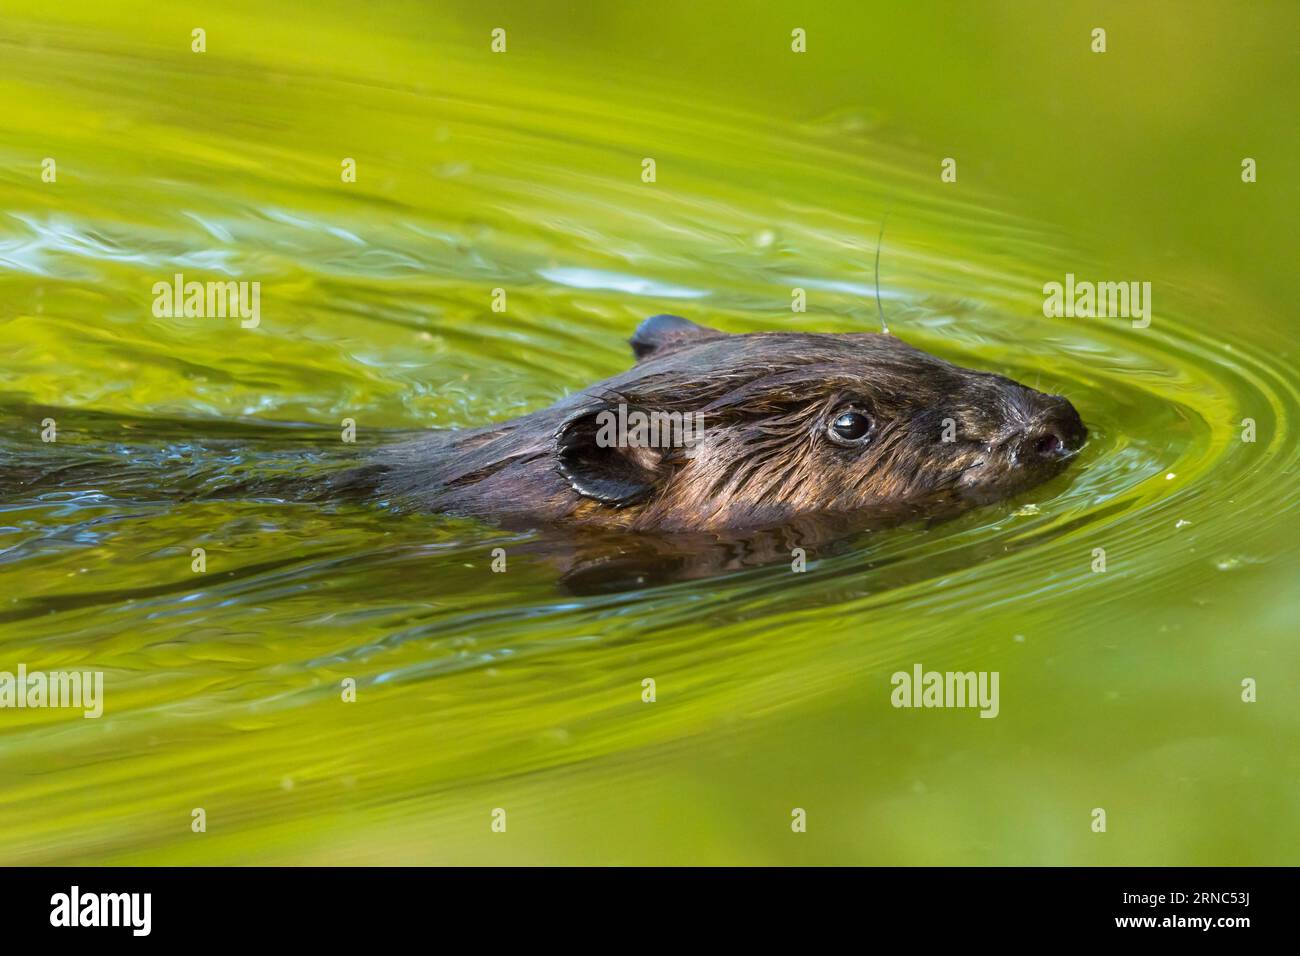 Portrait de castor nord-américain en gros plan, Castor canadensis, nageant dans un étang, Toronto, Canada Banque D'Images